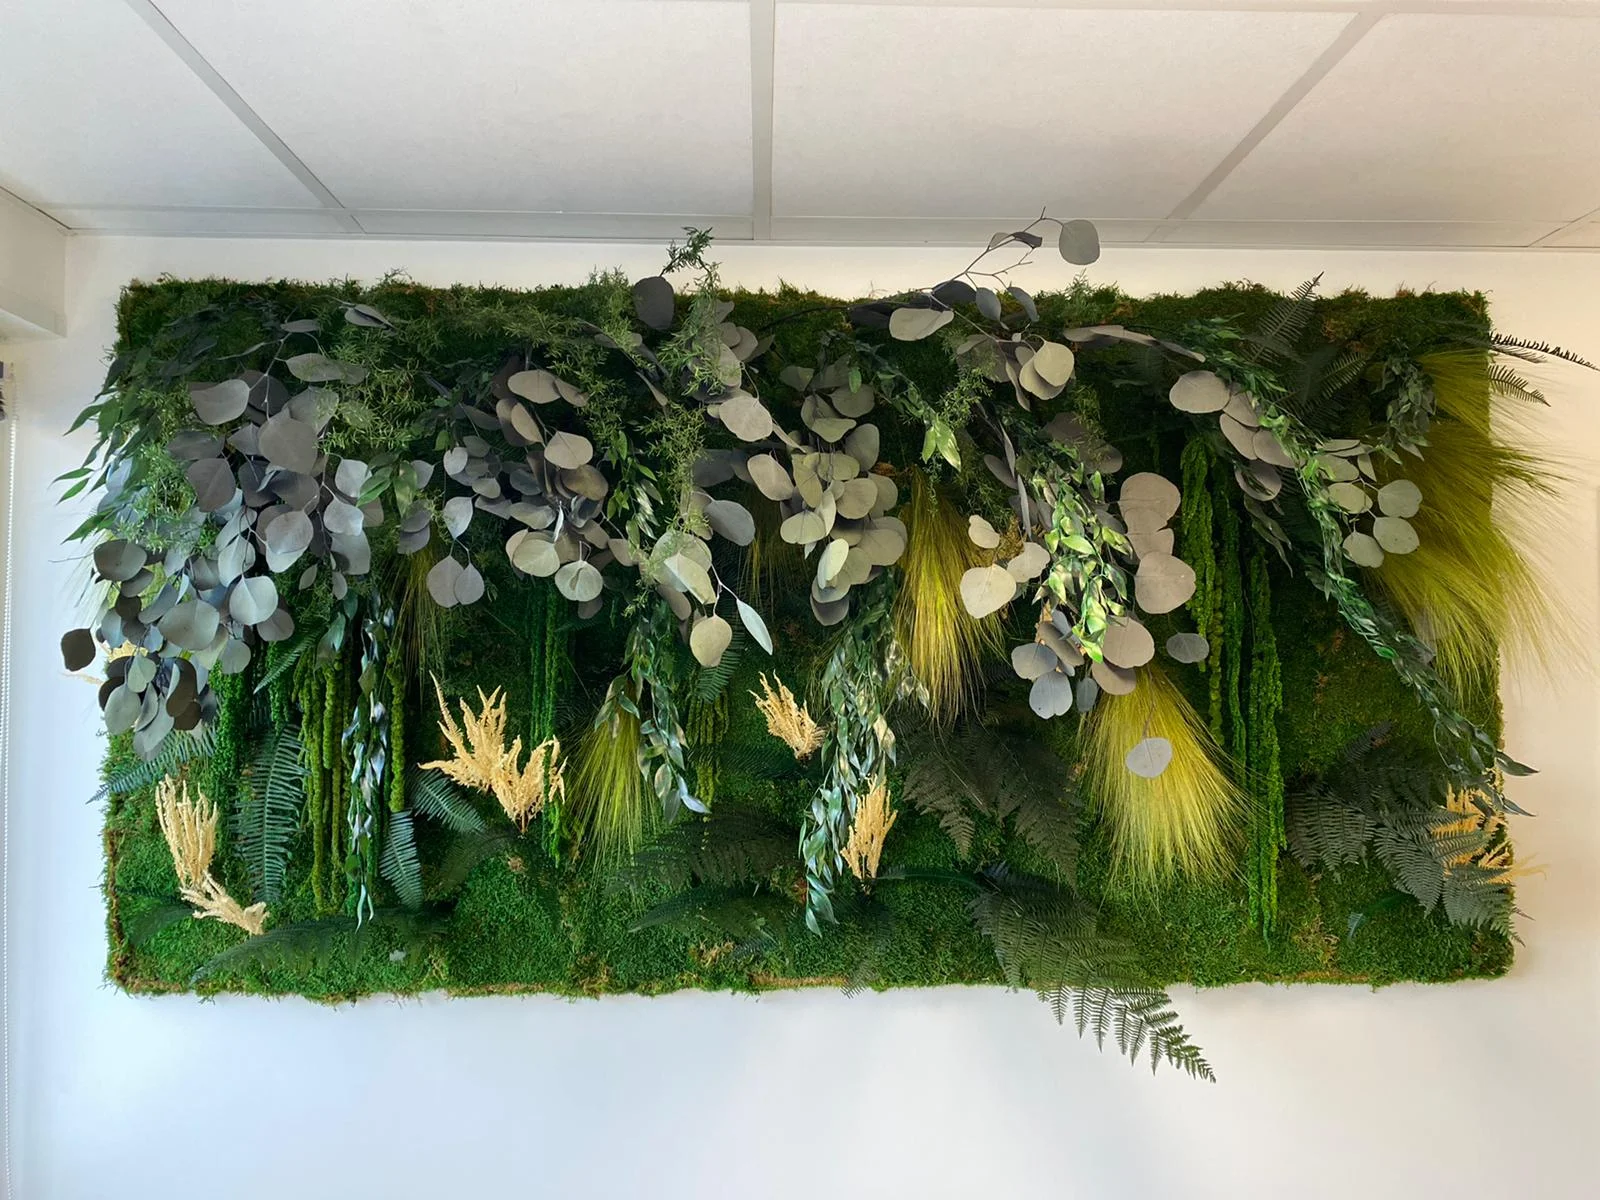 mur végétal composé de plante stabilisé comme eucalyptus, mousse végétale